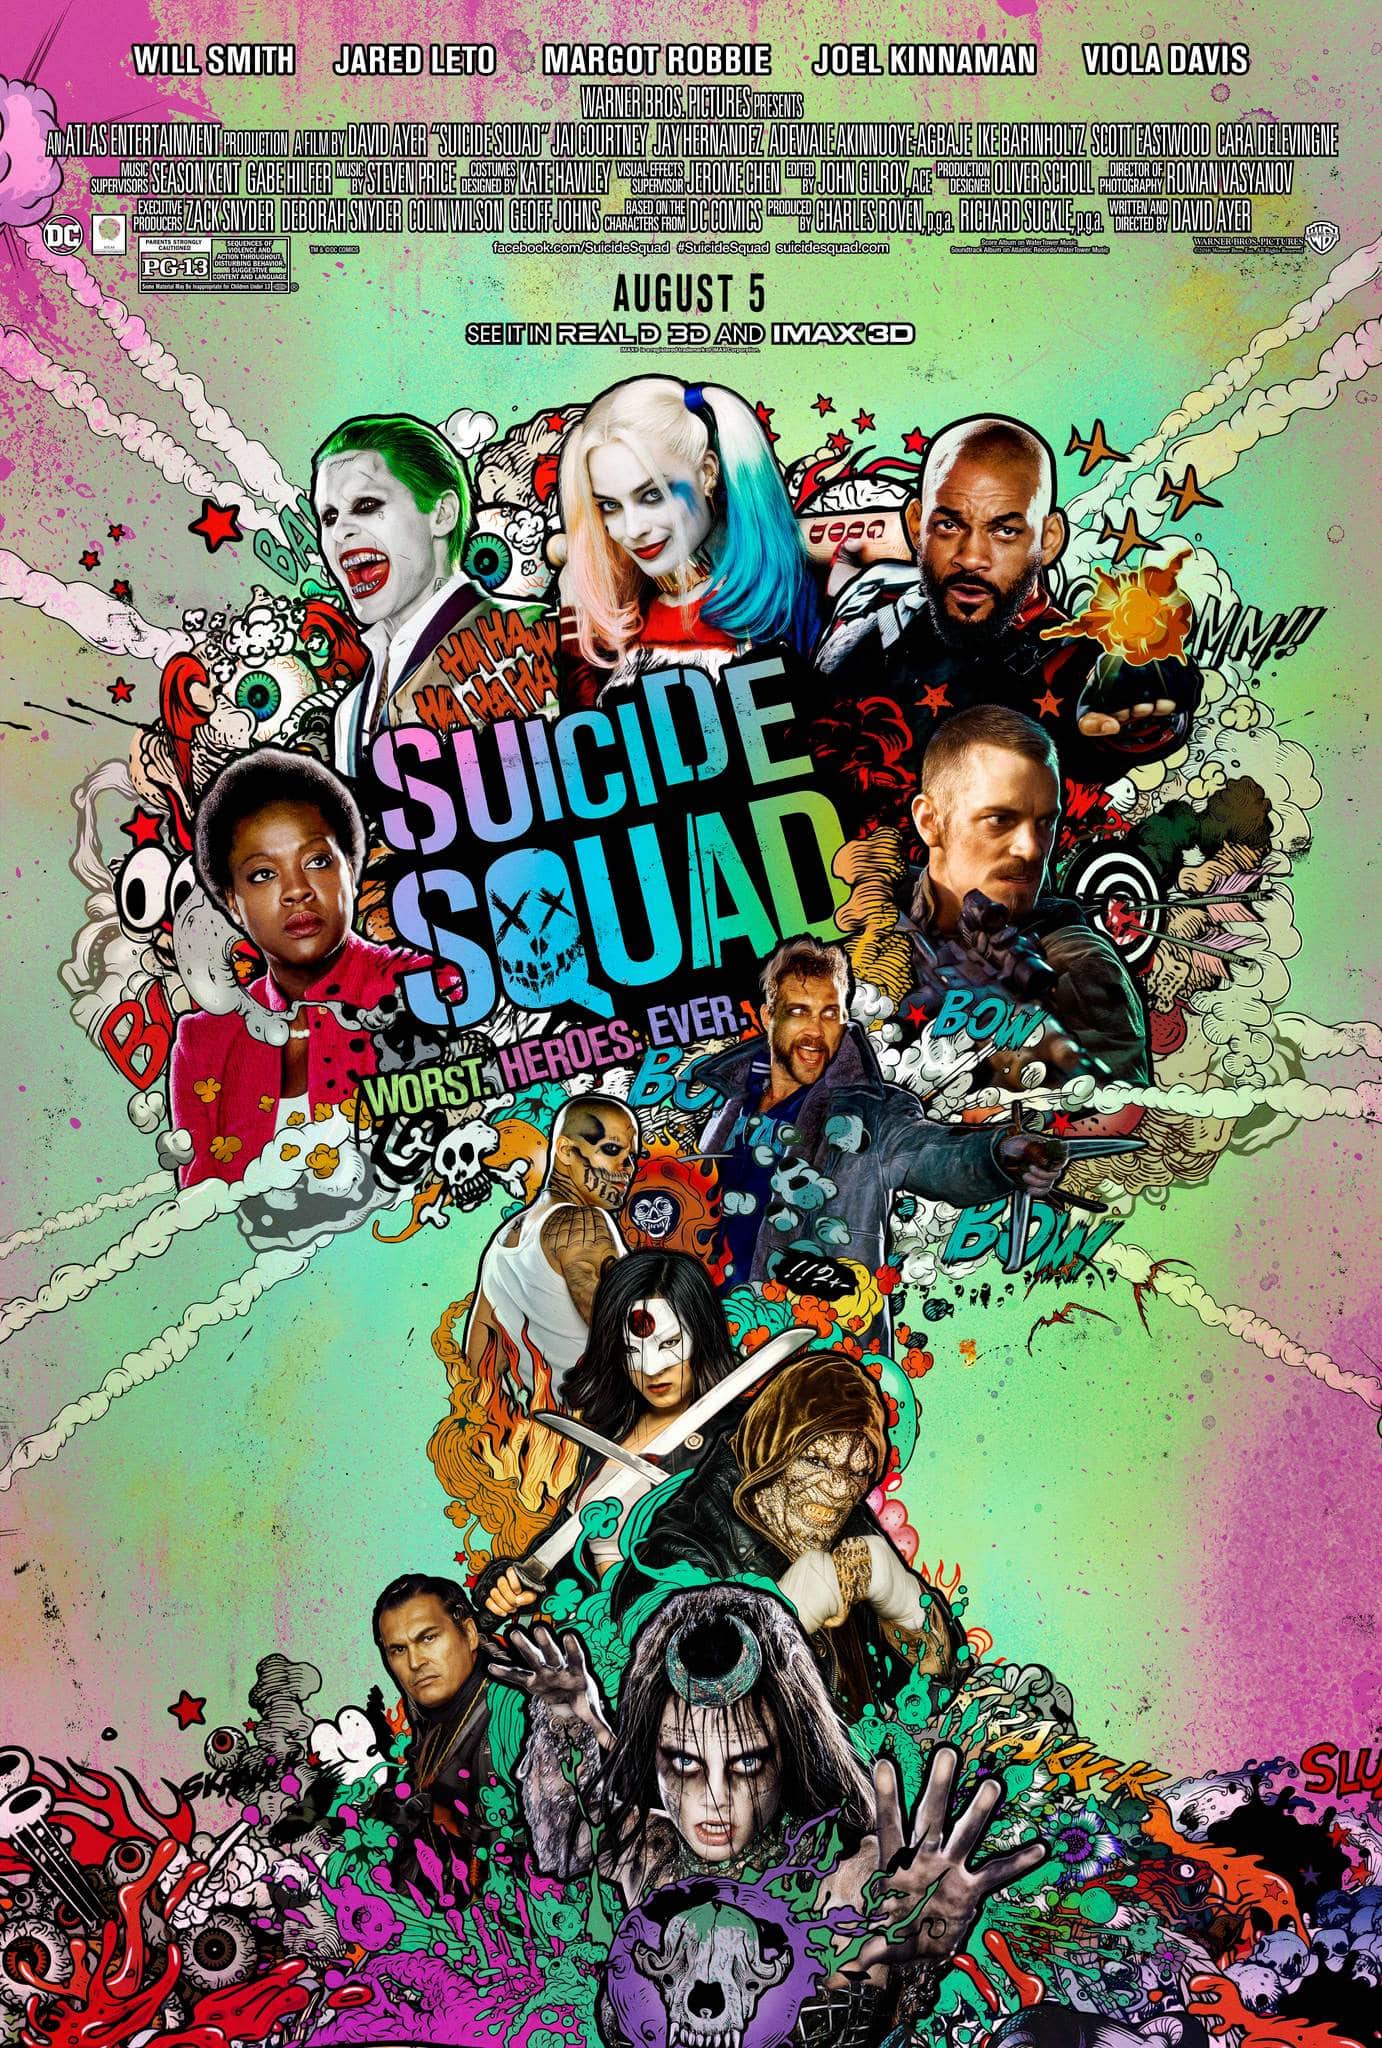 Quand Suicide Squad 2 Sort Sur Netflix Domestiquette